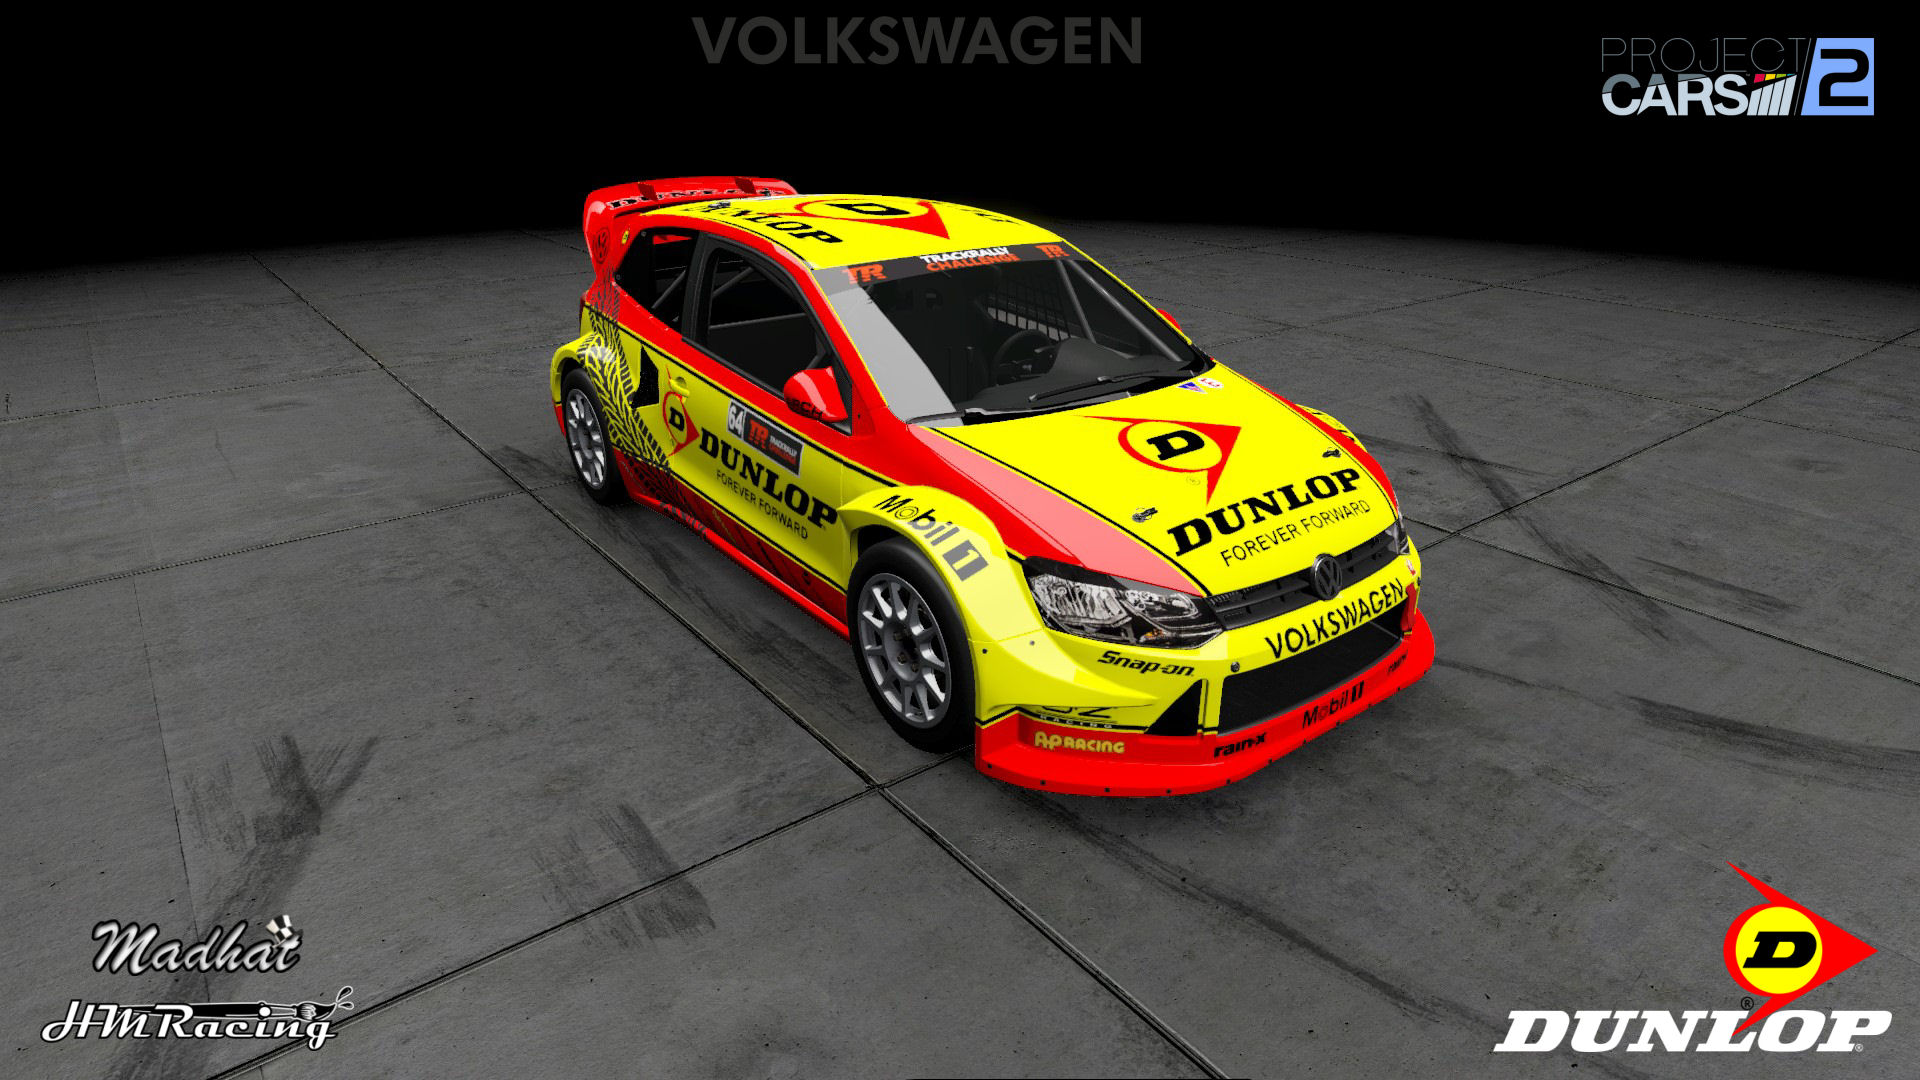 Dunlop VW Polo RX 01.jpg